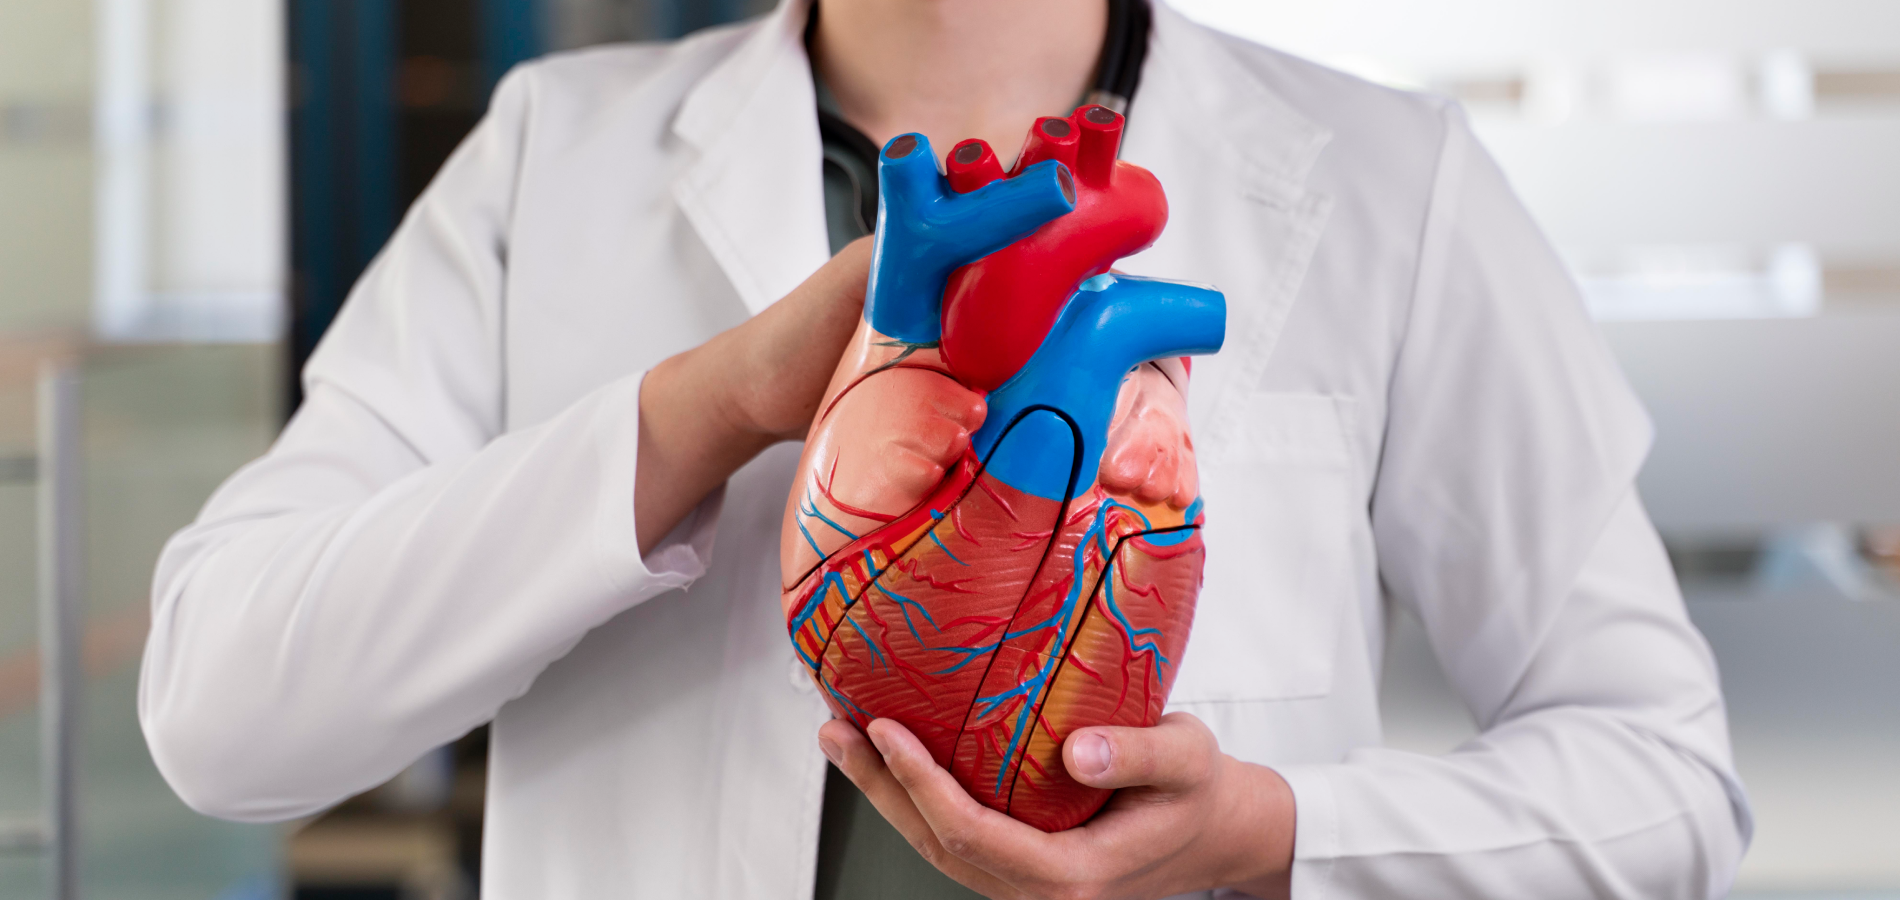 Общие сведения об ишемии сердца